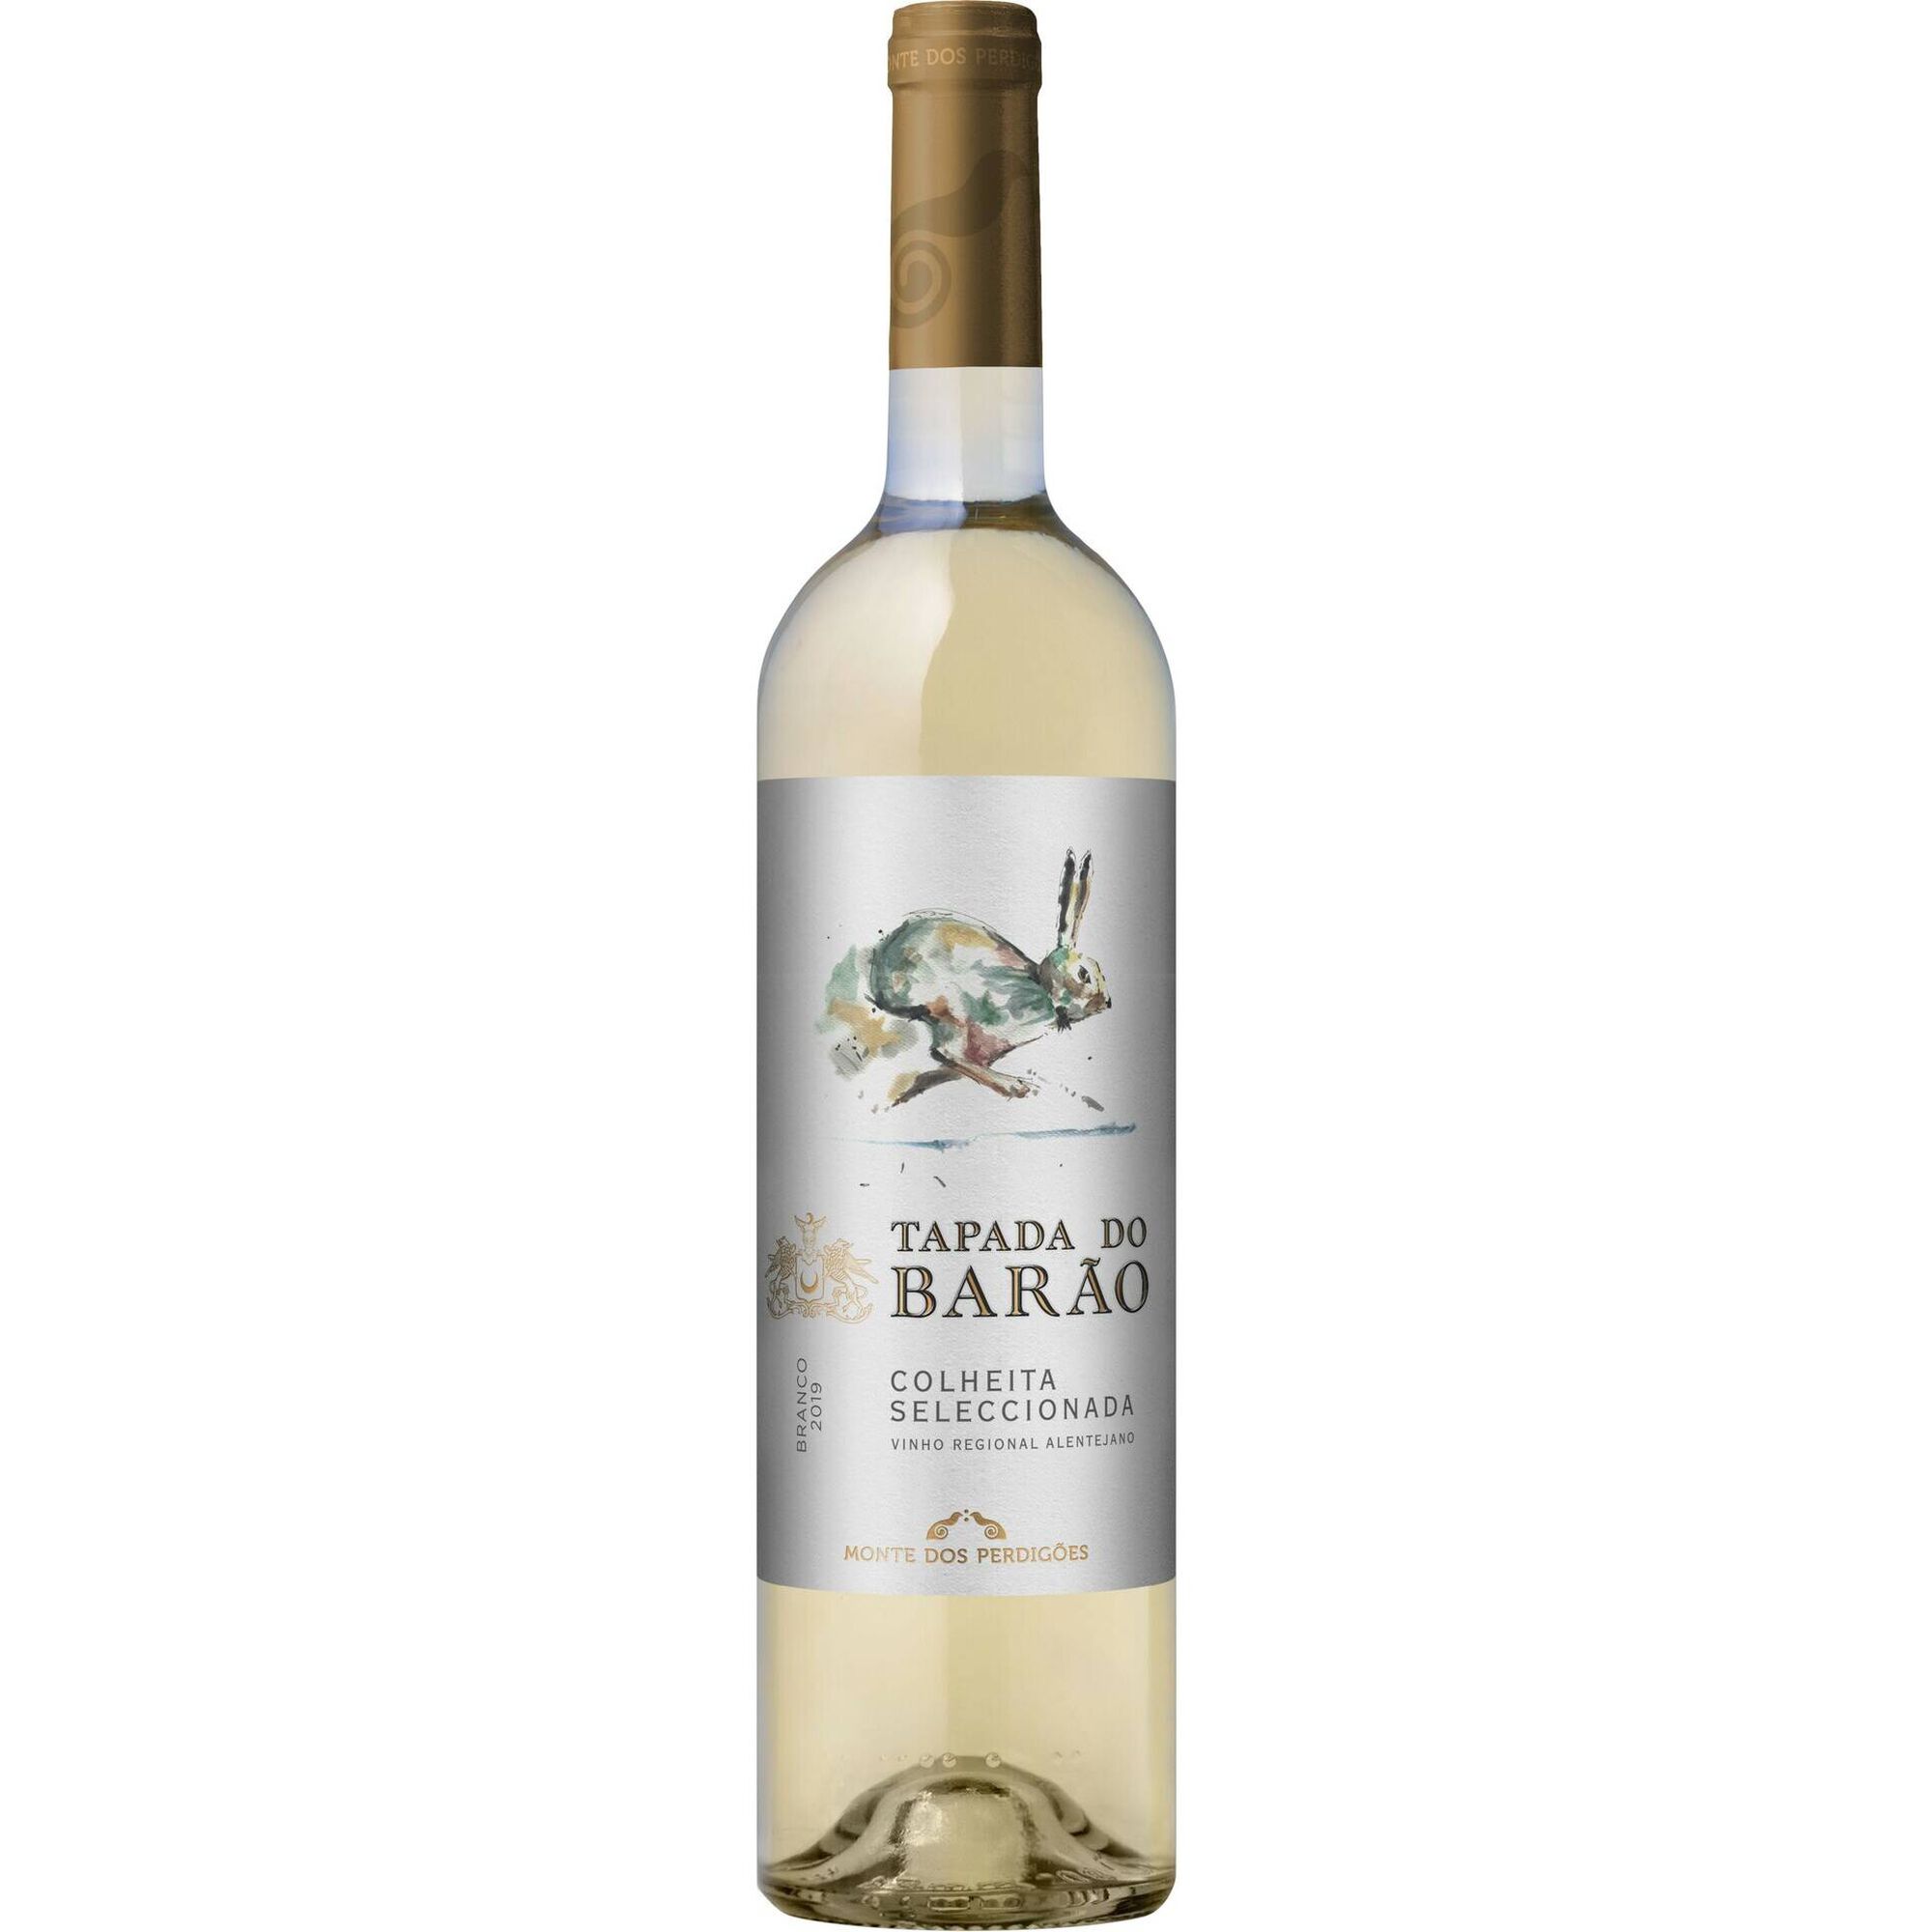 Tapada do Barão Colheita Selecionada Regional Alentejano Vinho Branco